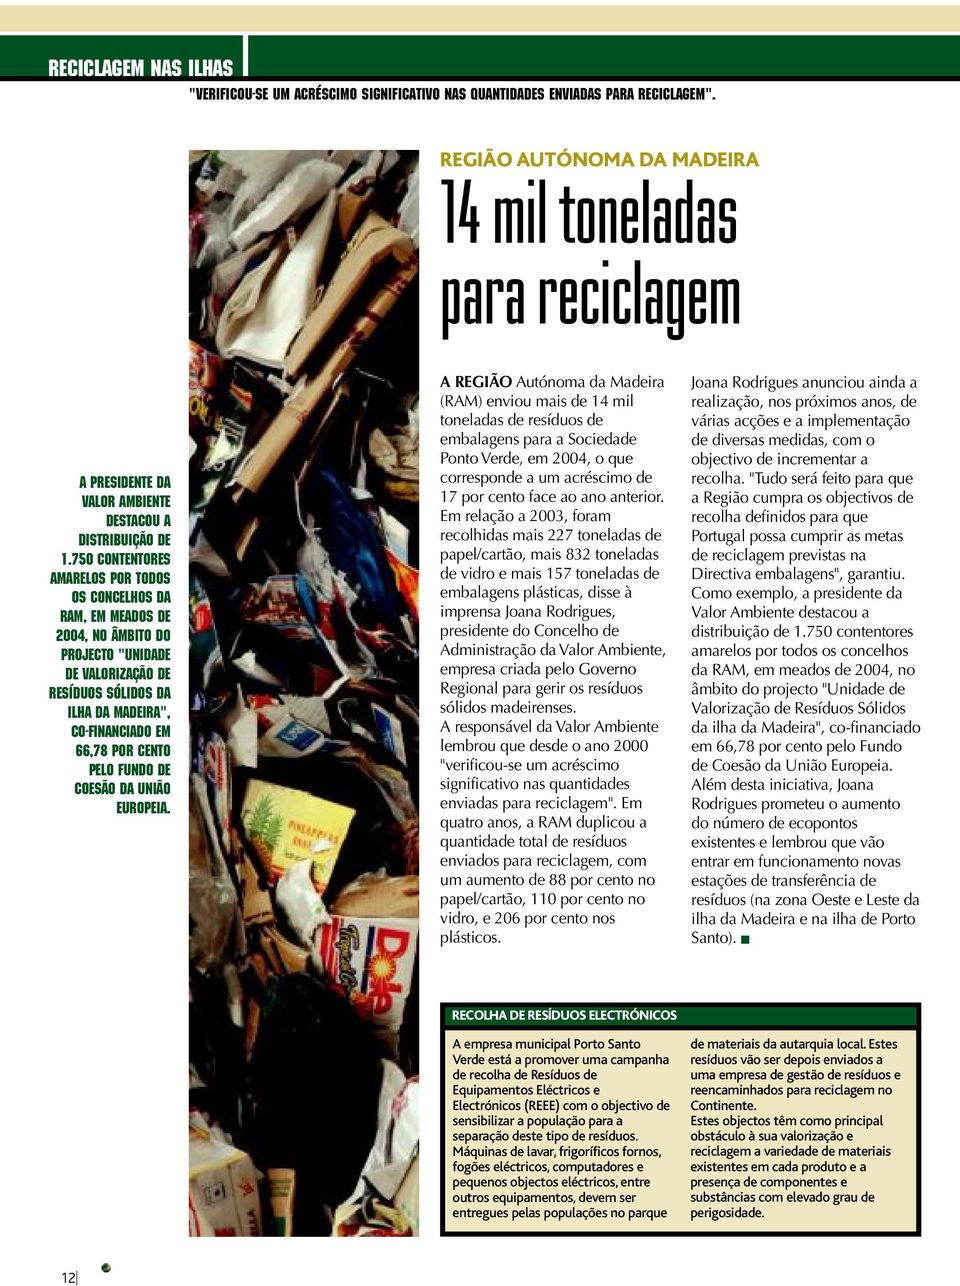 750 contentores amarelos por todos os concelhos da RAM, em meados de 2004, no âmbito do projecto "Unidade de Valorização de Resíduos Sólidos da ilha da Madeira", co-financiado em 66,78 por cento pelo